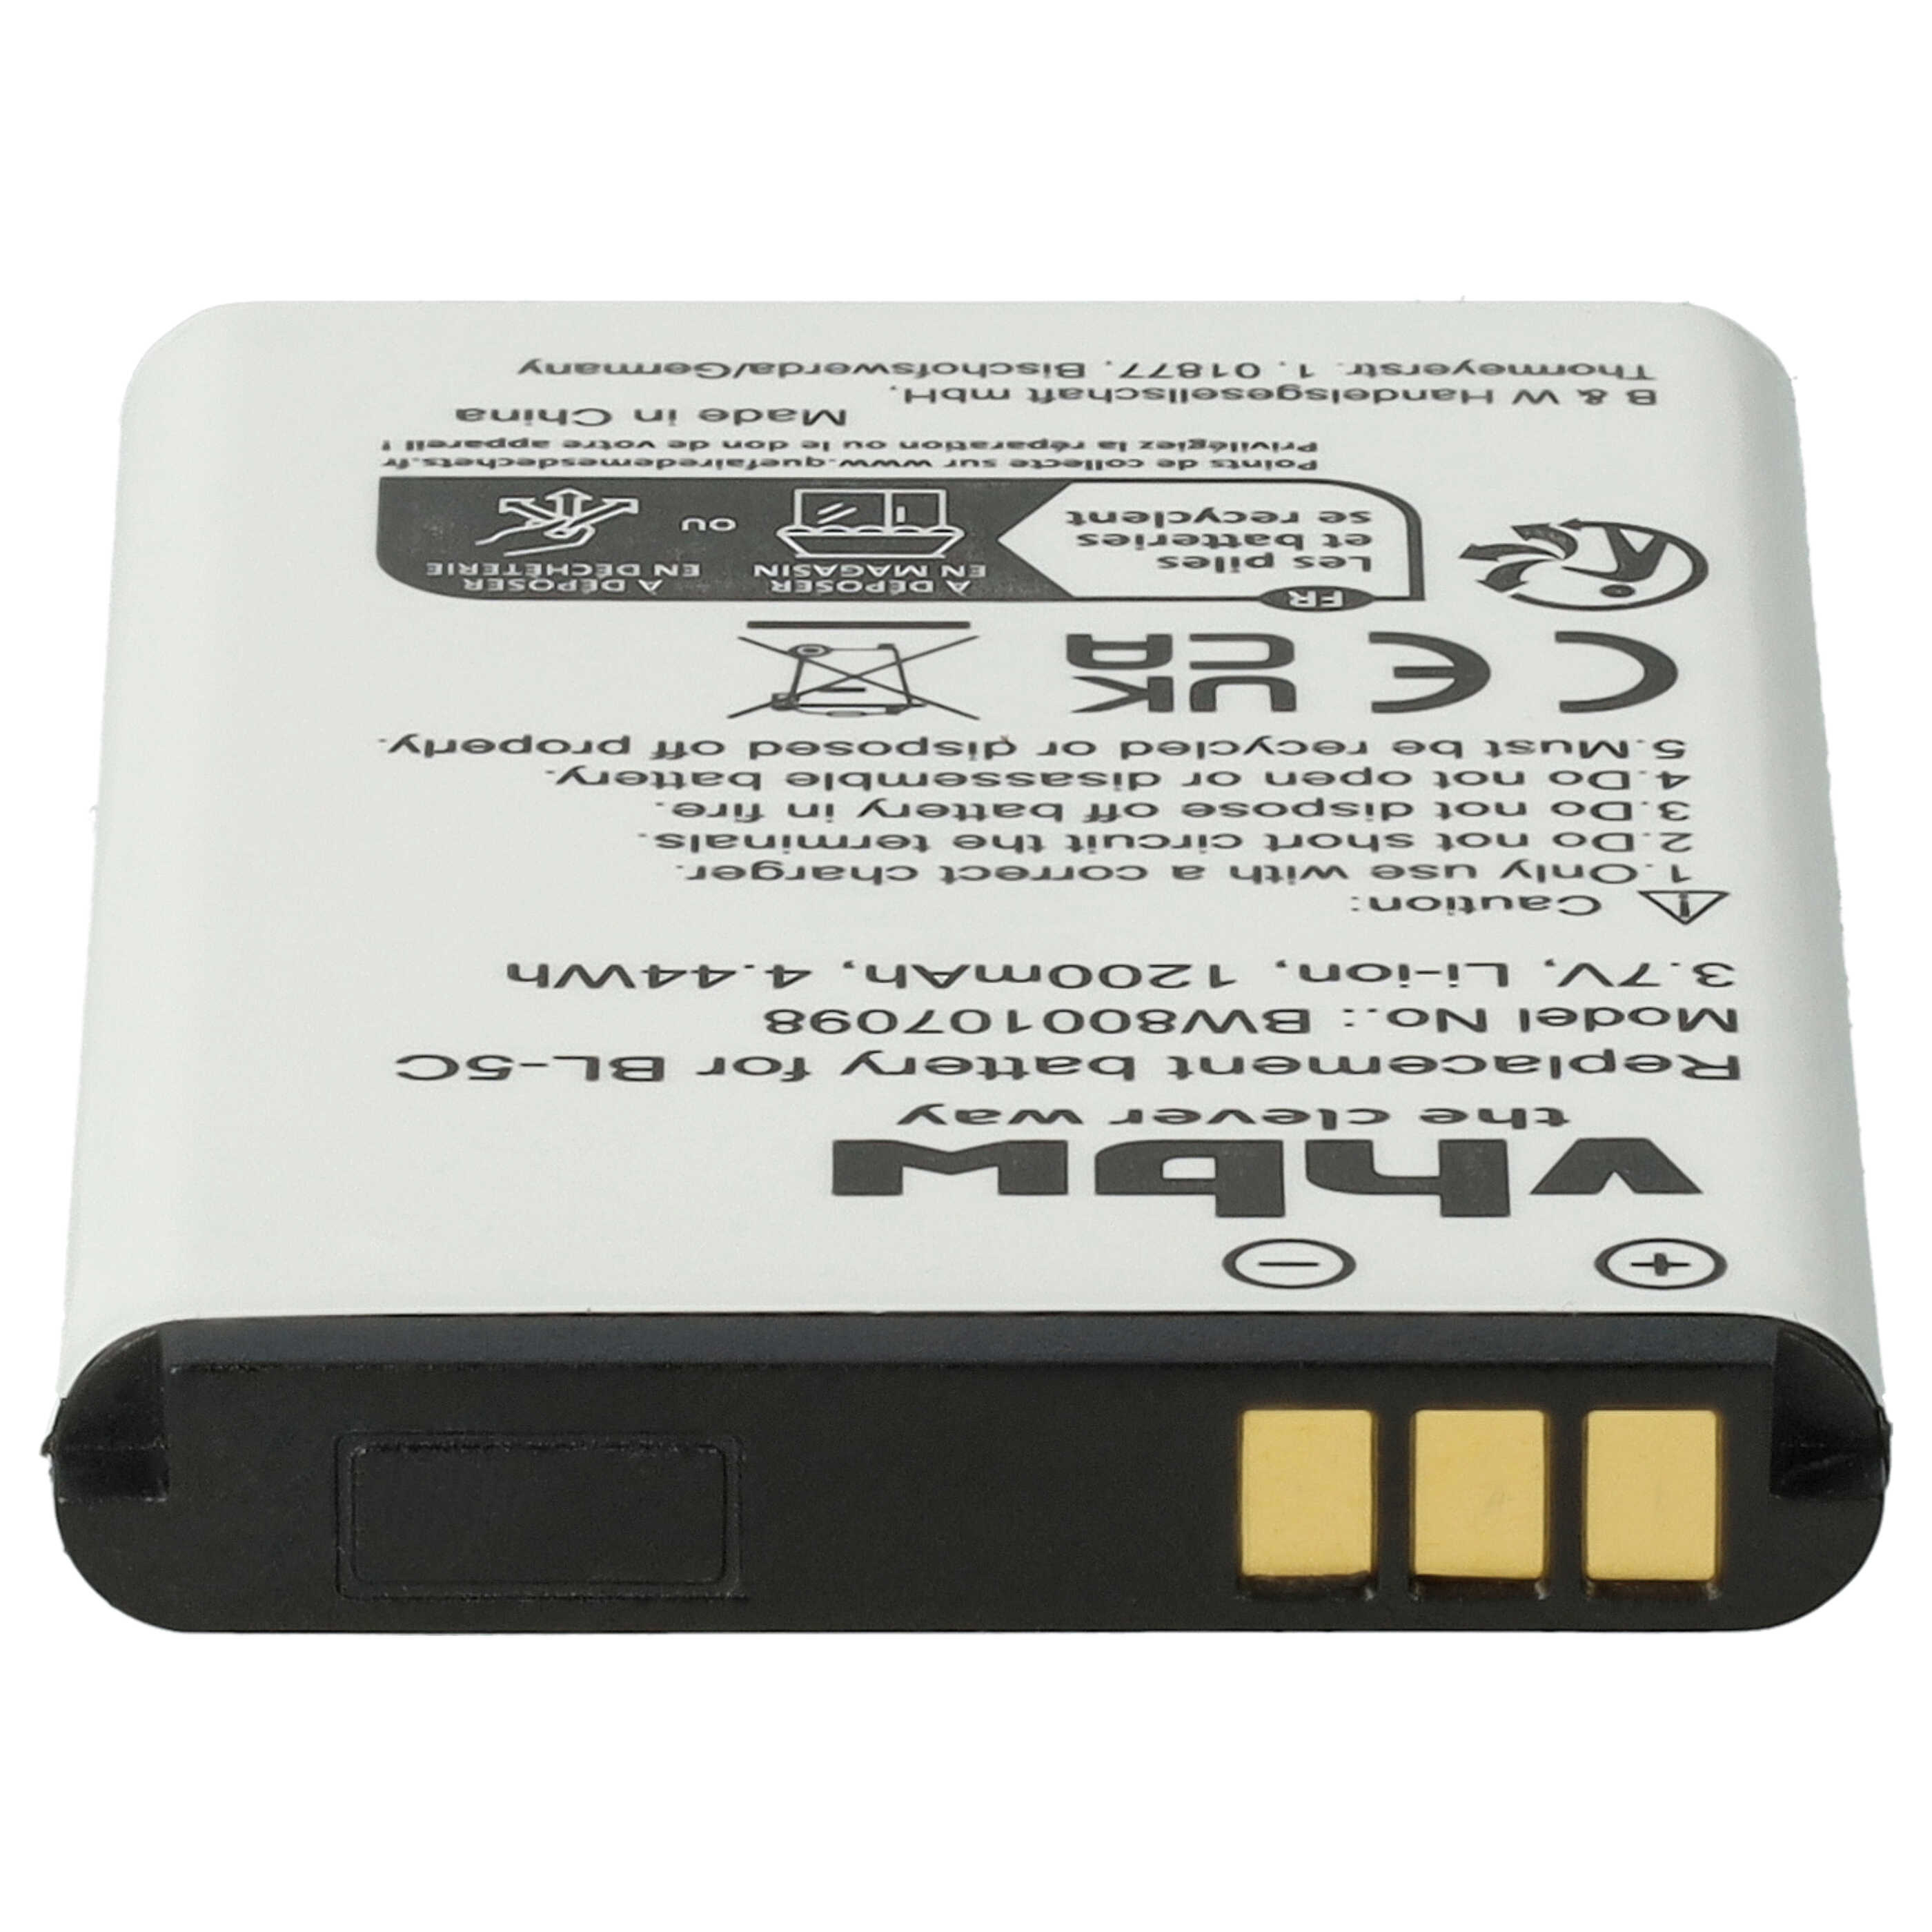 Batterie remplace MP-S-A1, RCB215, BS-16 pour téléphone portable - 1200mAh, 3,7V, Li-ion